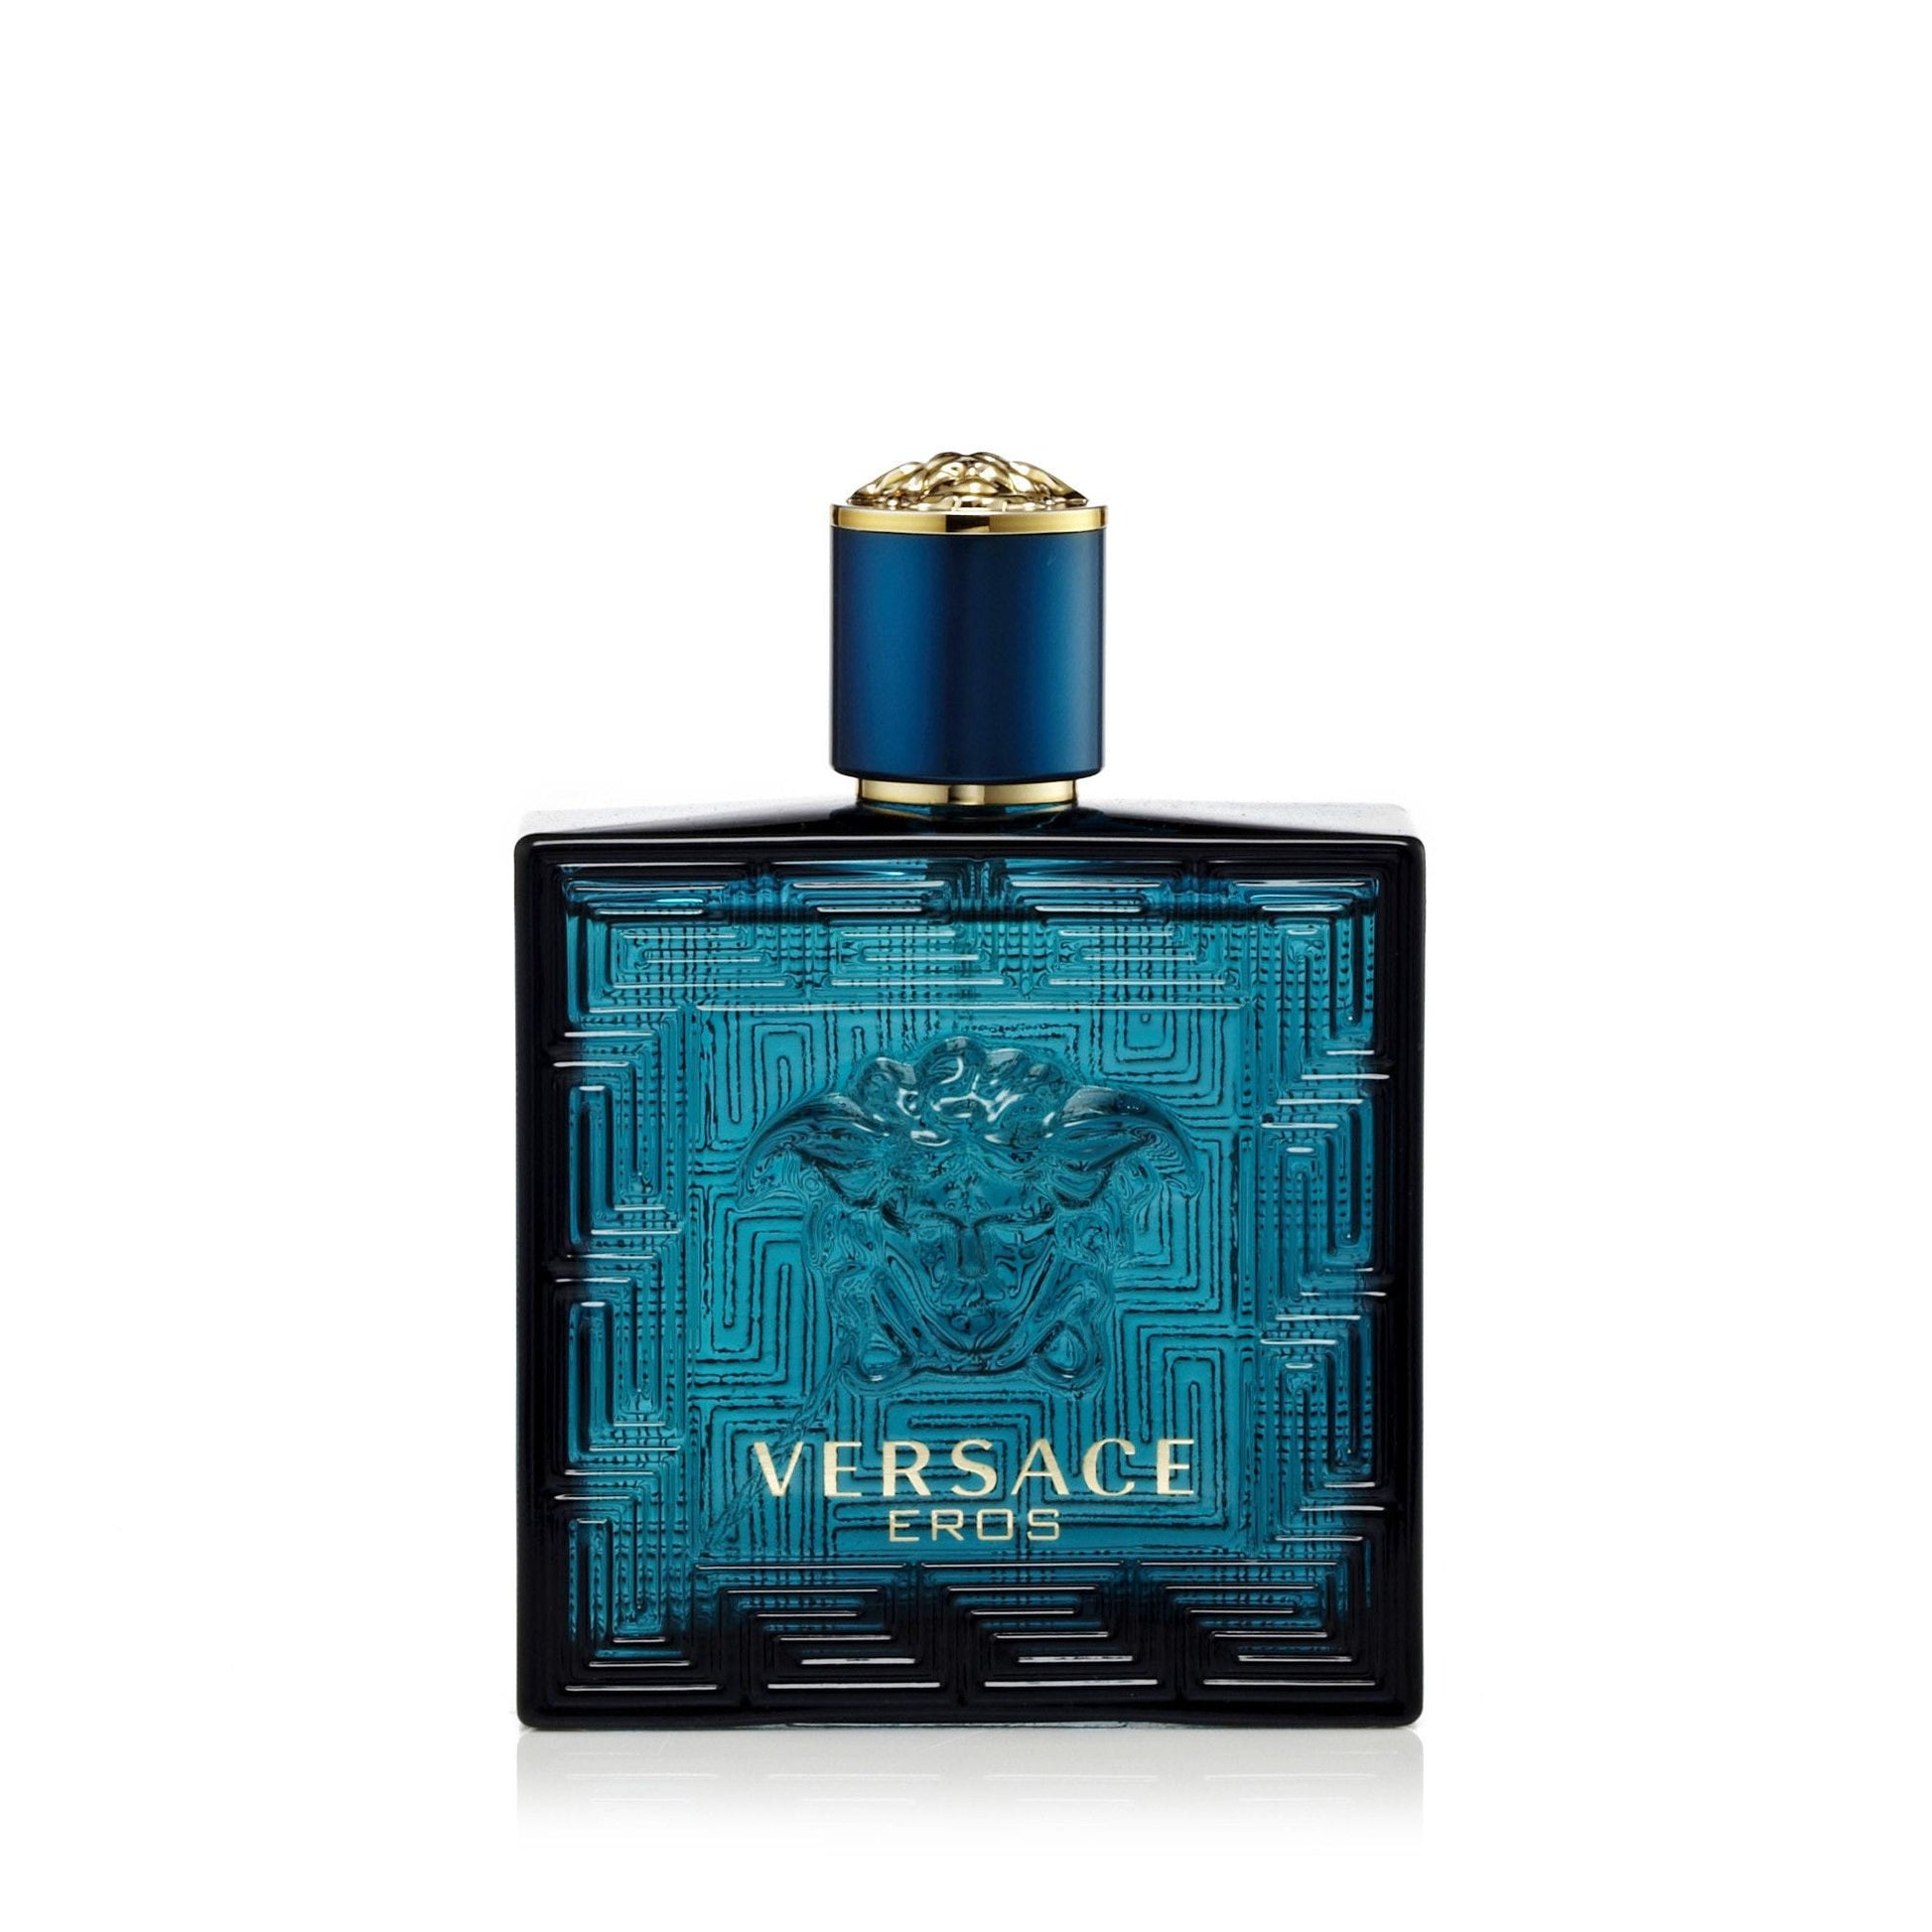 Eros Eau de Toilette Spray for Men by Versace, Product image 3